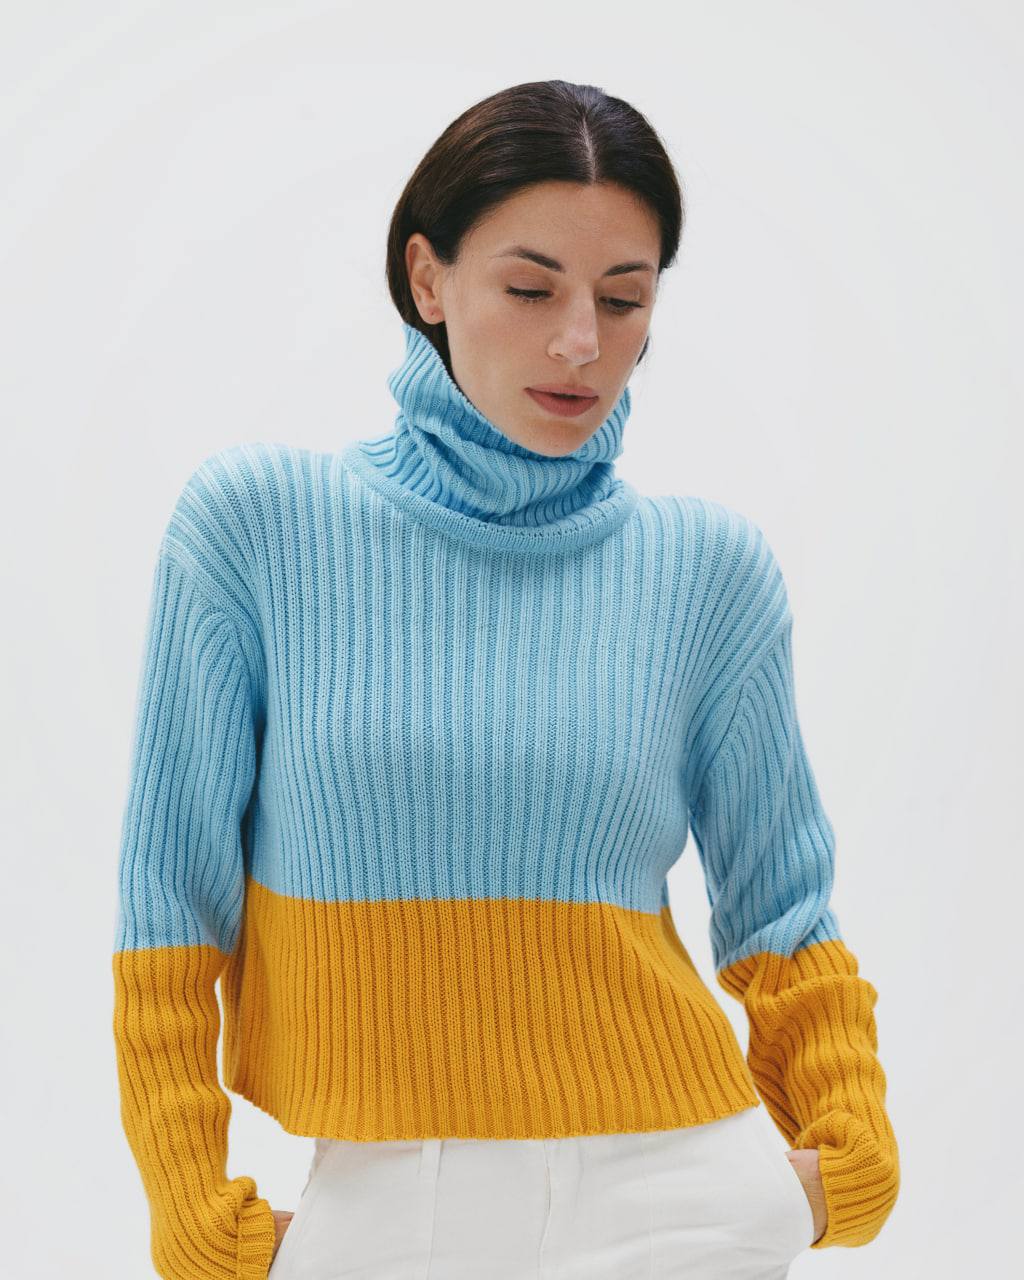 Бренд Bevza выпустил капсульную коллекцию желто-голубых свитеров